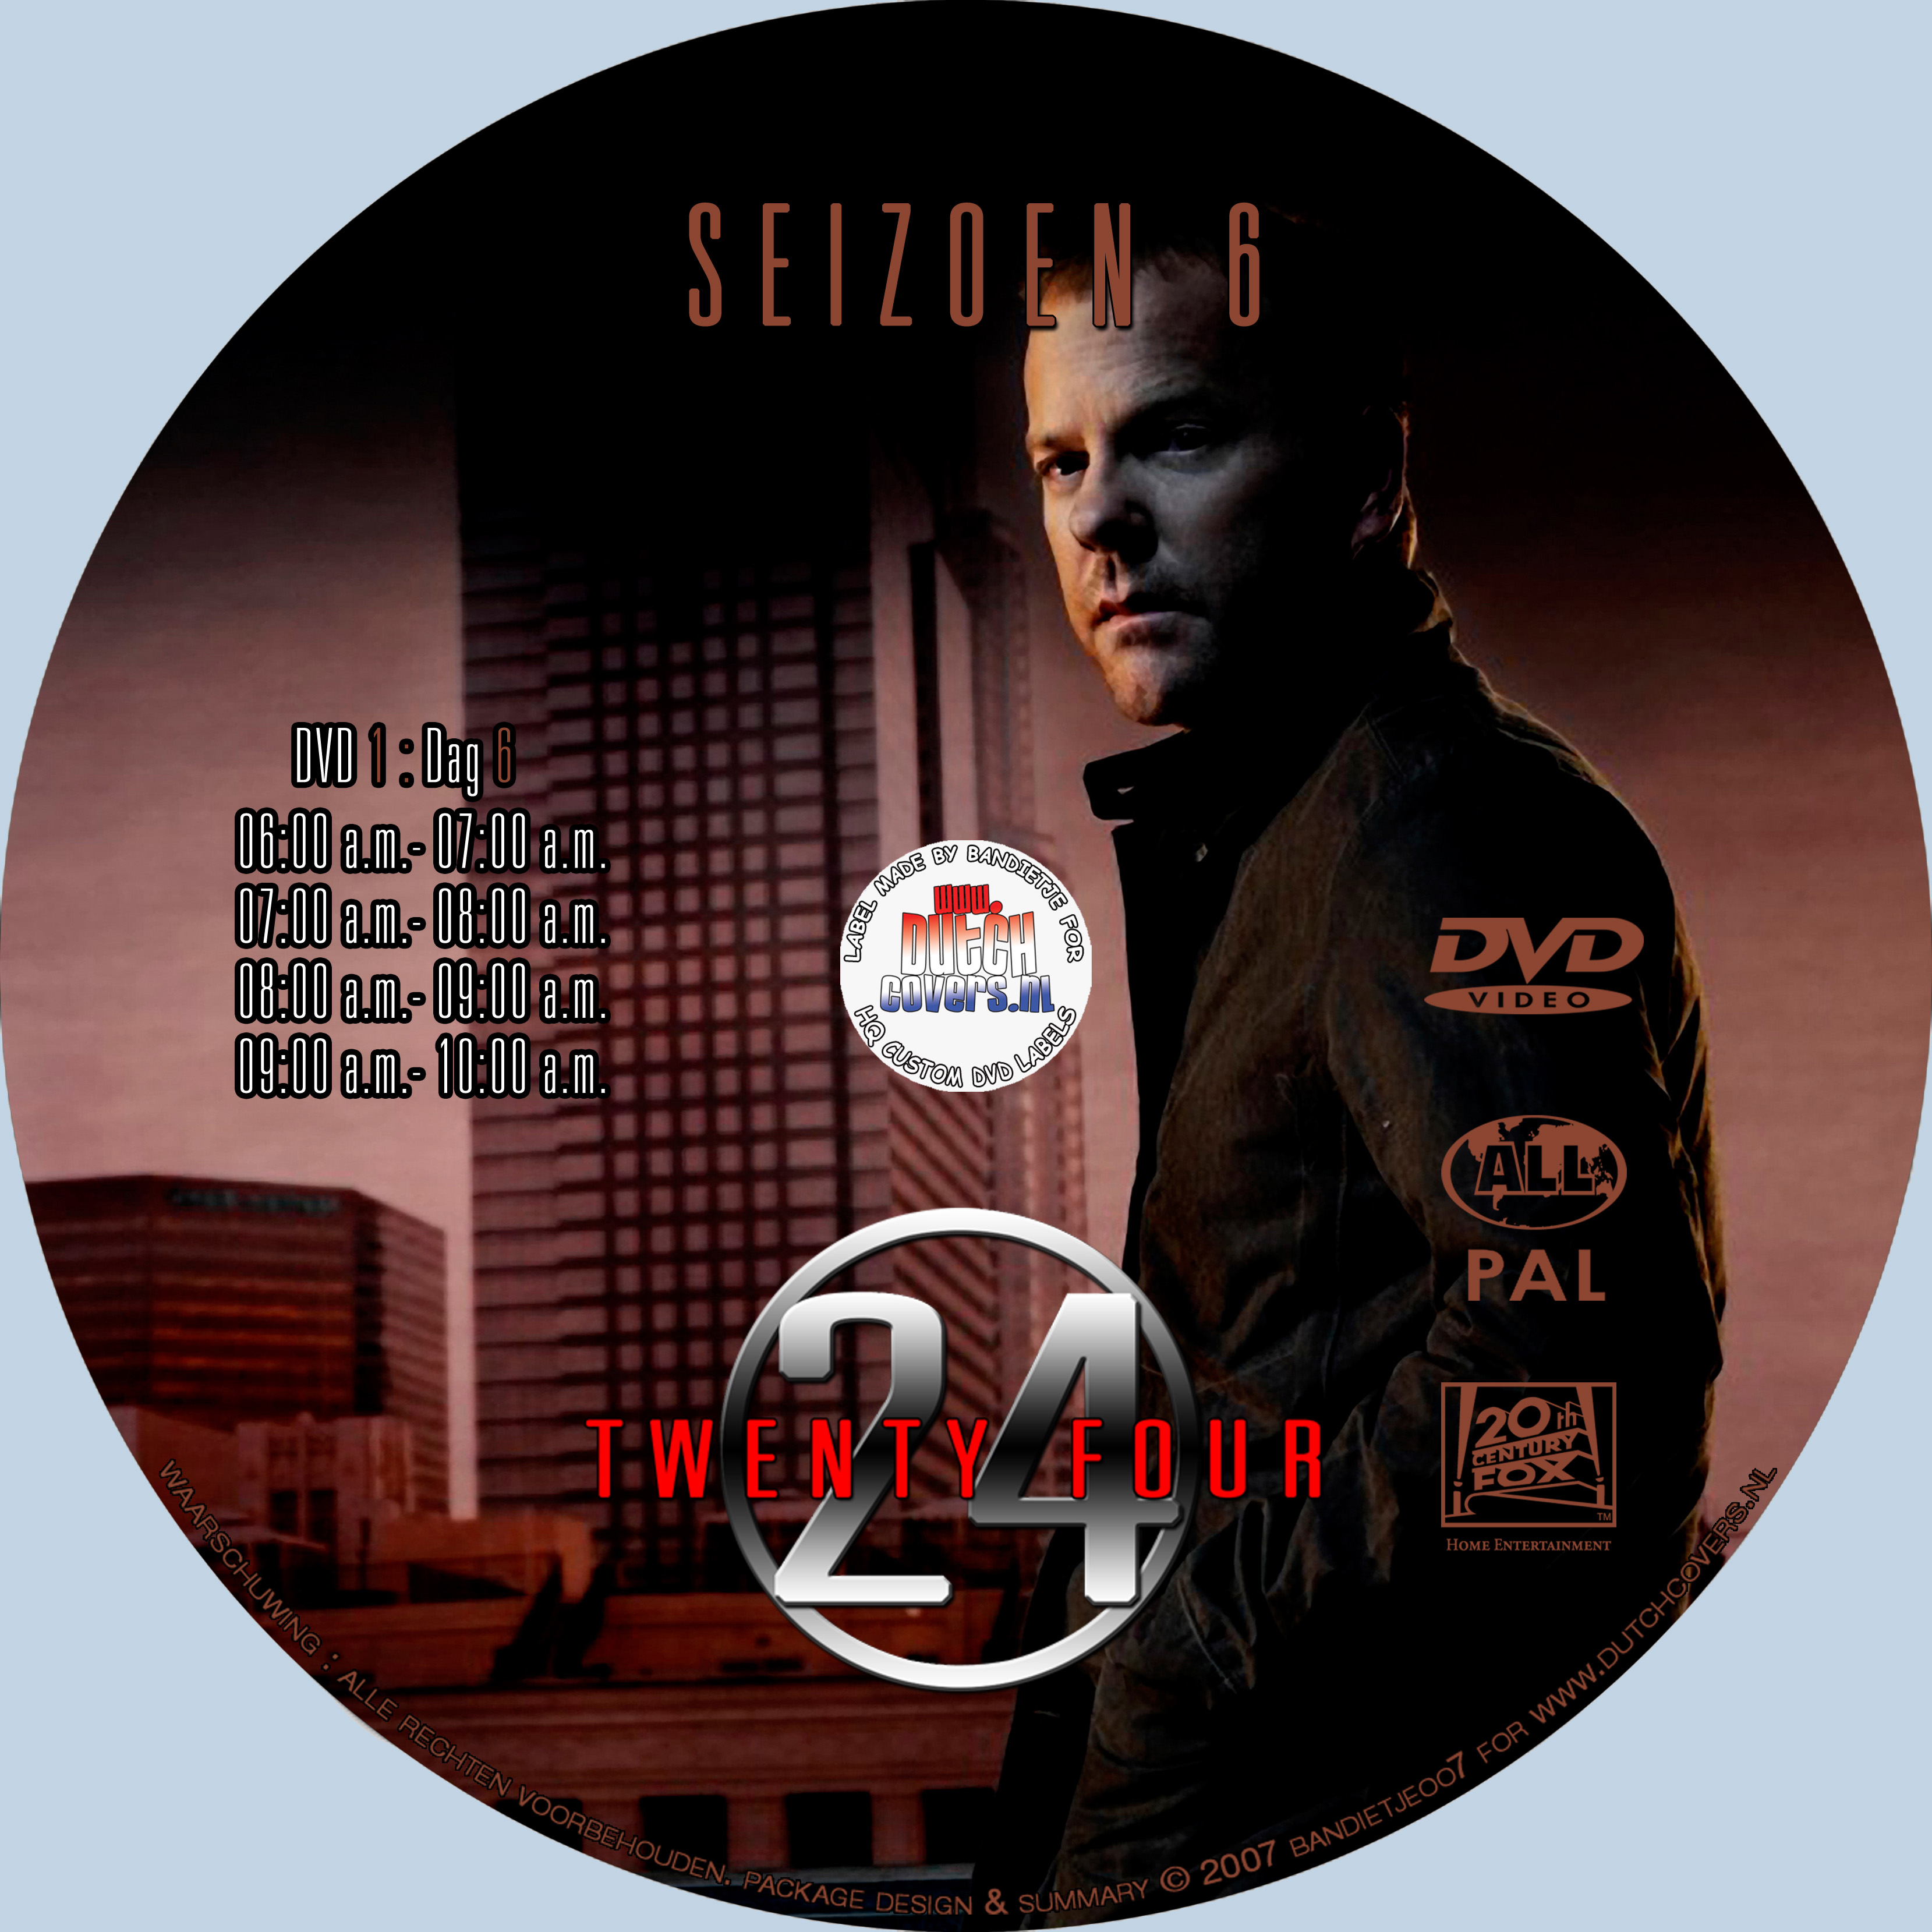 24 seizoen 6 disc 1 label